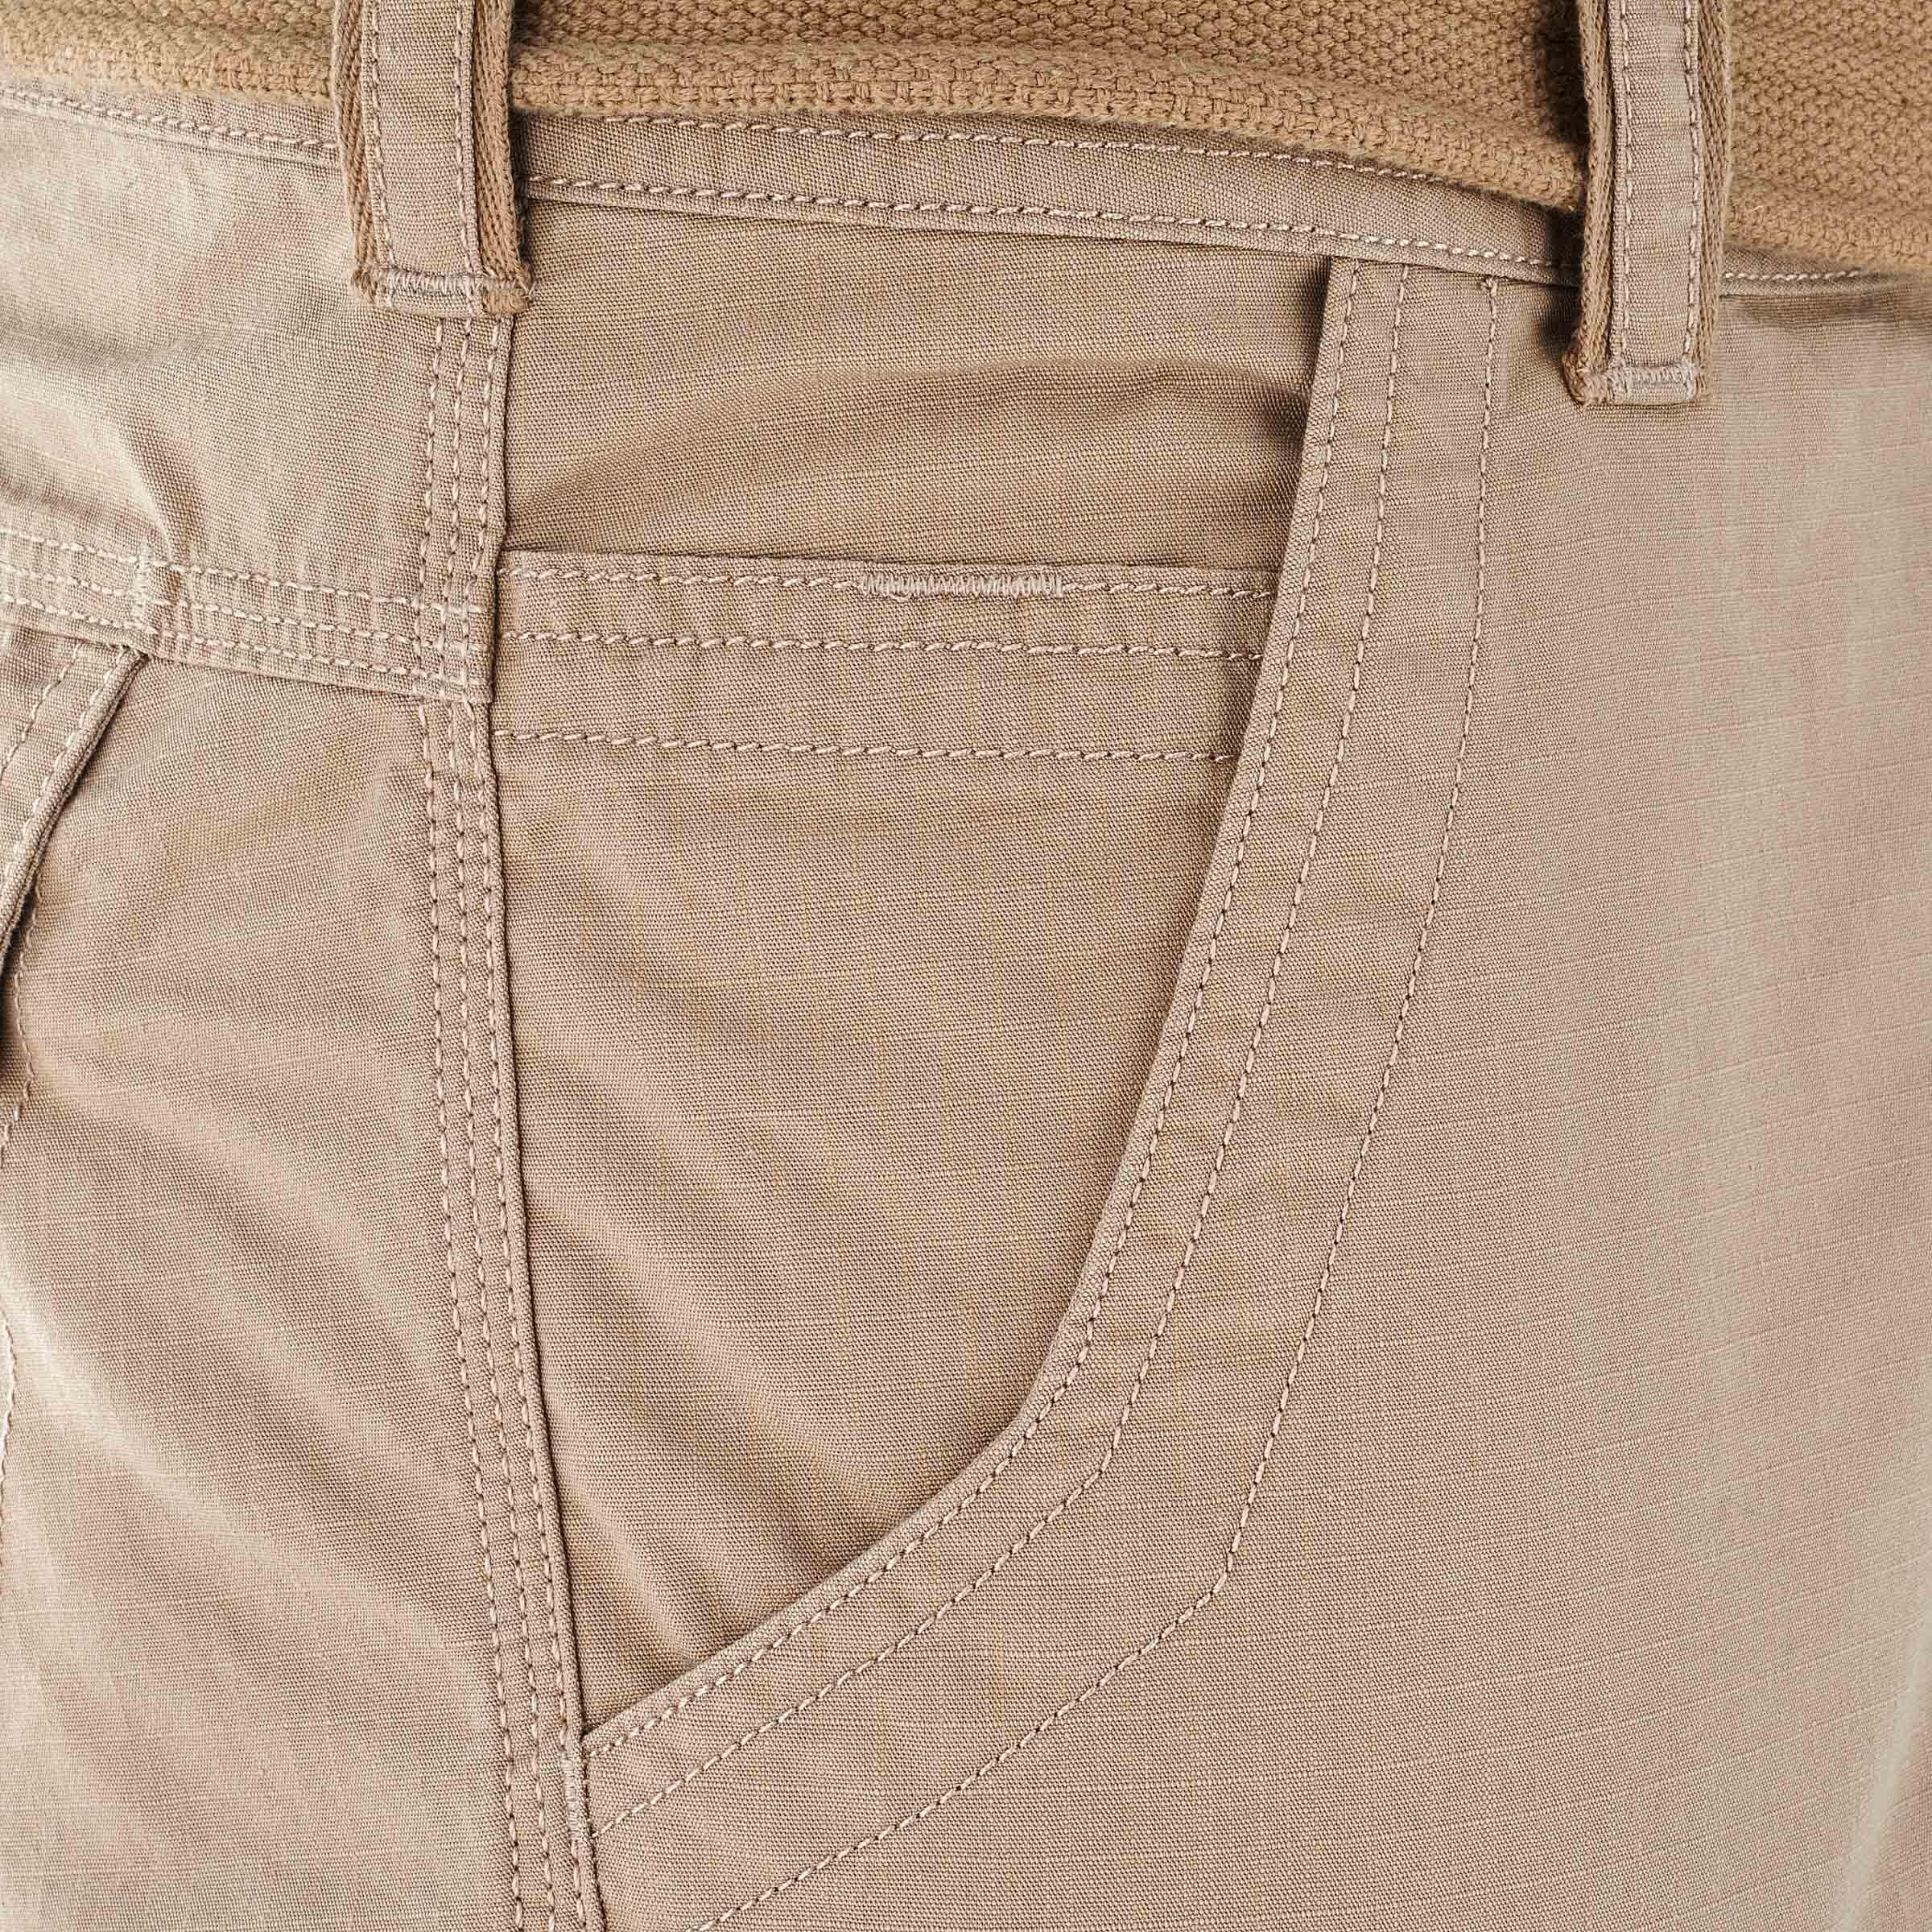 Travel 1000 Men's Trousers - Beige 11/13